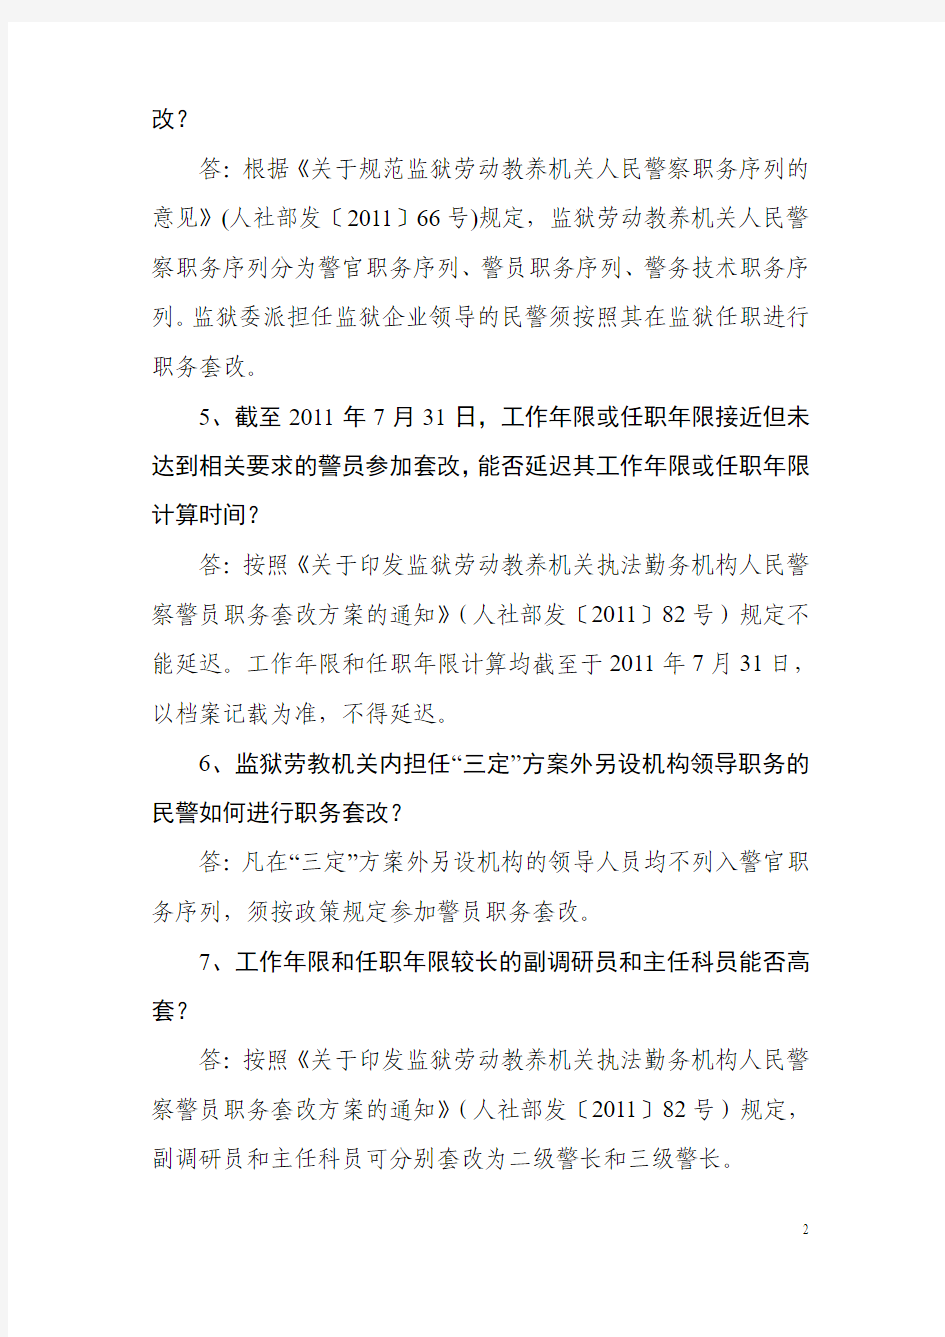 湖北省监狱劳动教养机构警员职务套改工作政策解答(三)